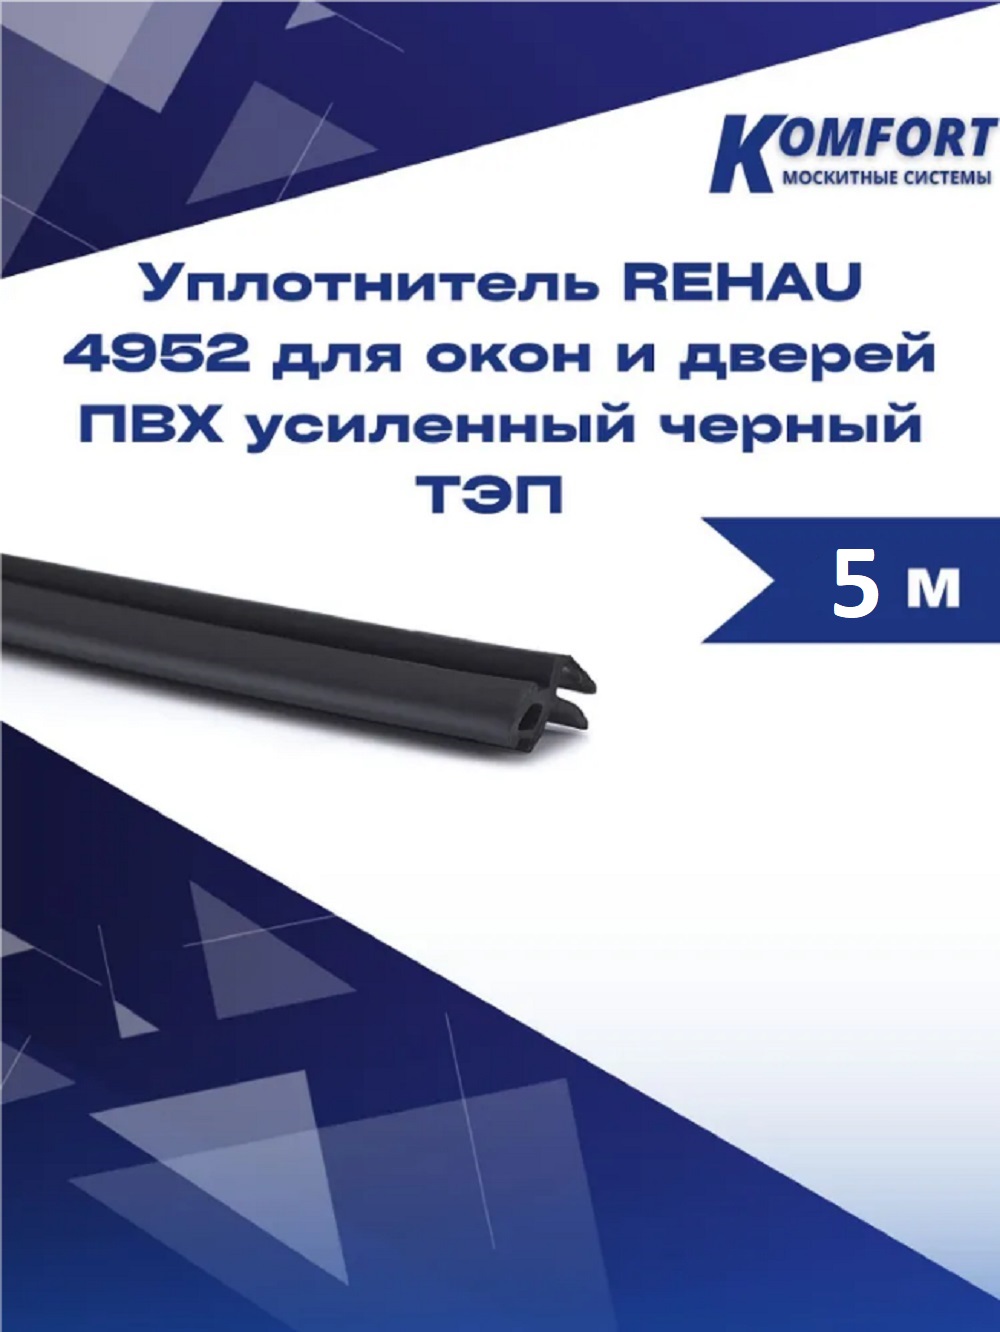 Уплотнитель REHAU 4952 для окон и дверей ПВХ усиленный черный ТЭП 5 м